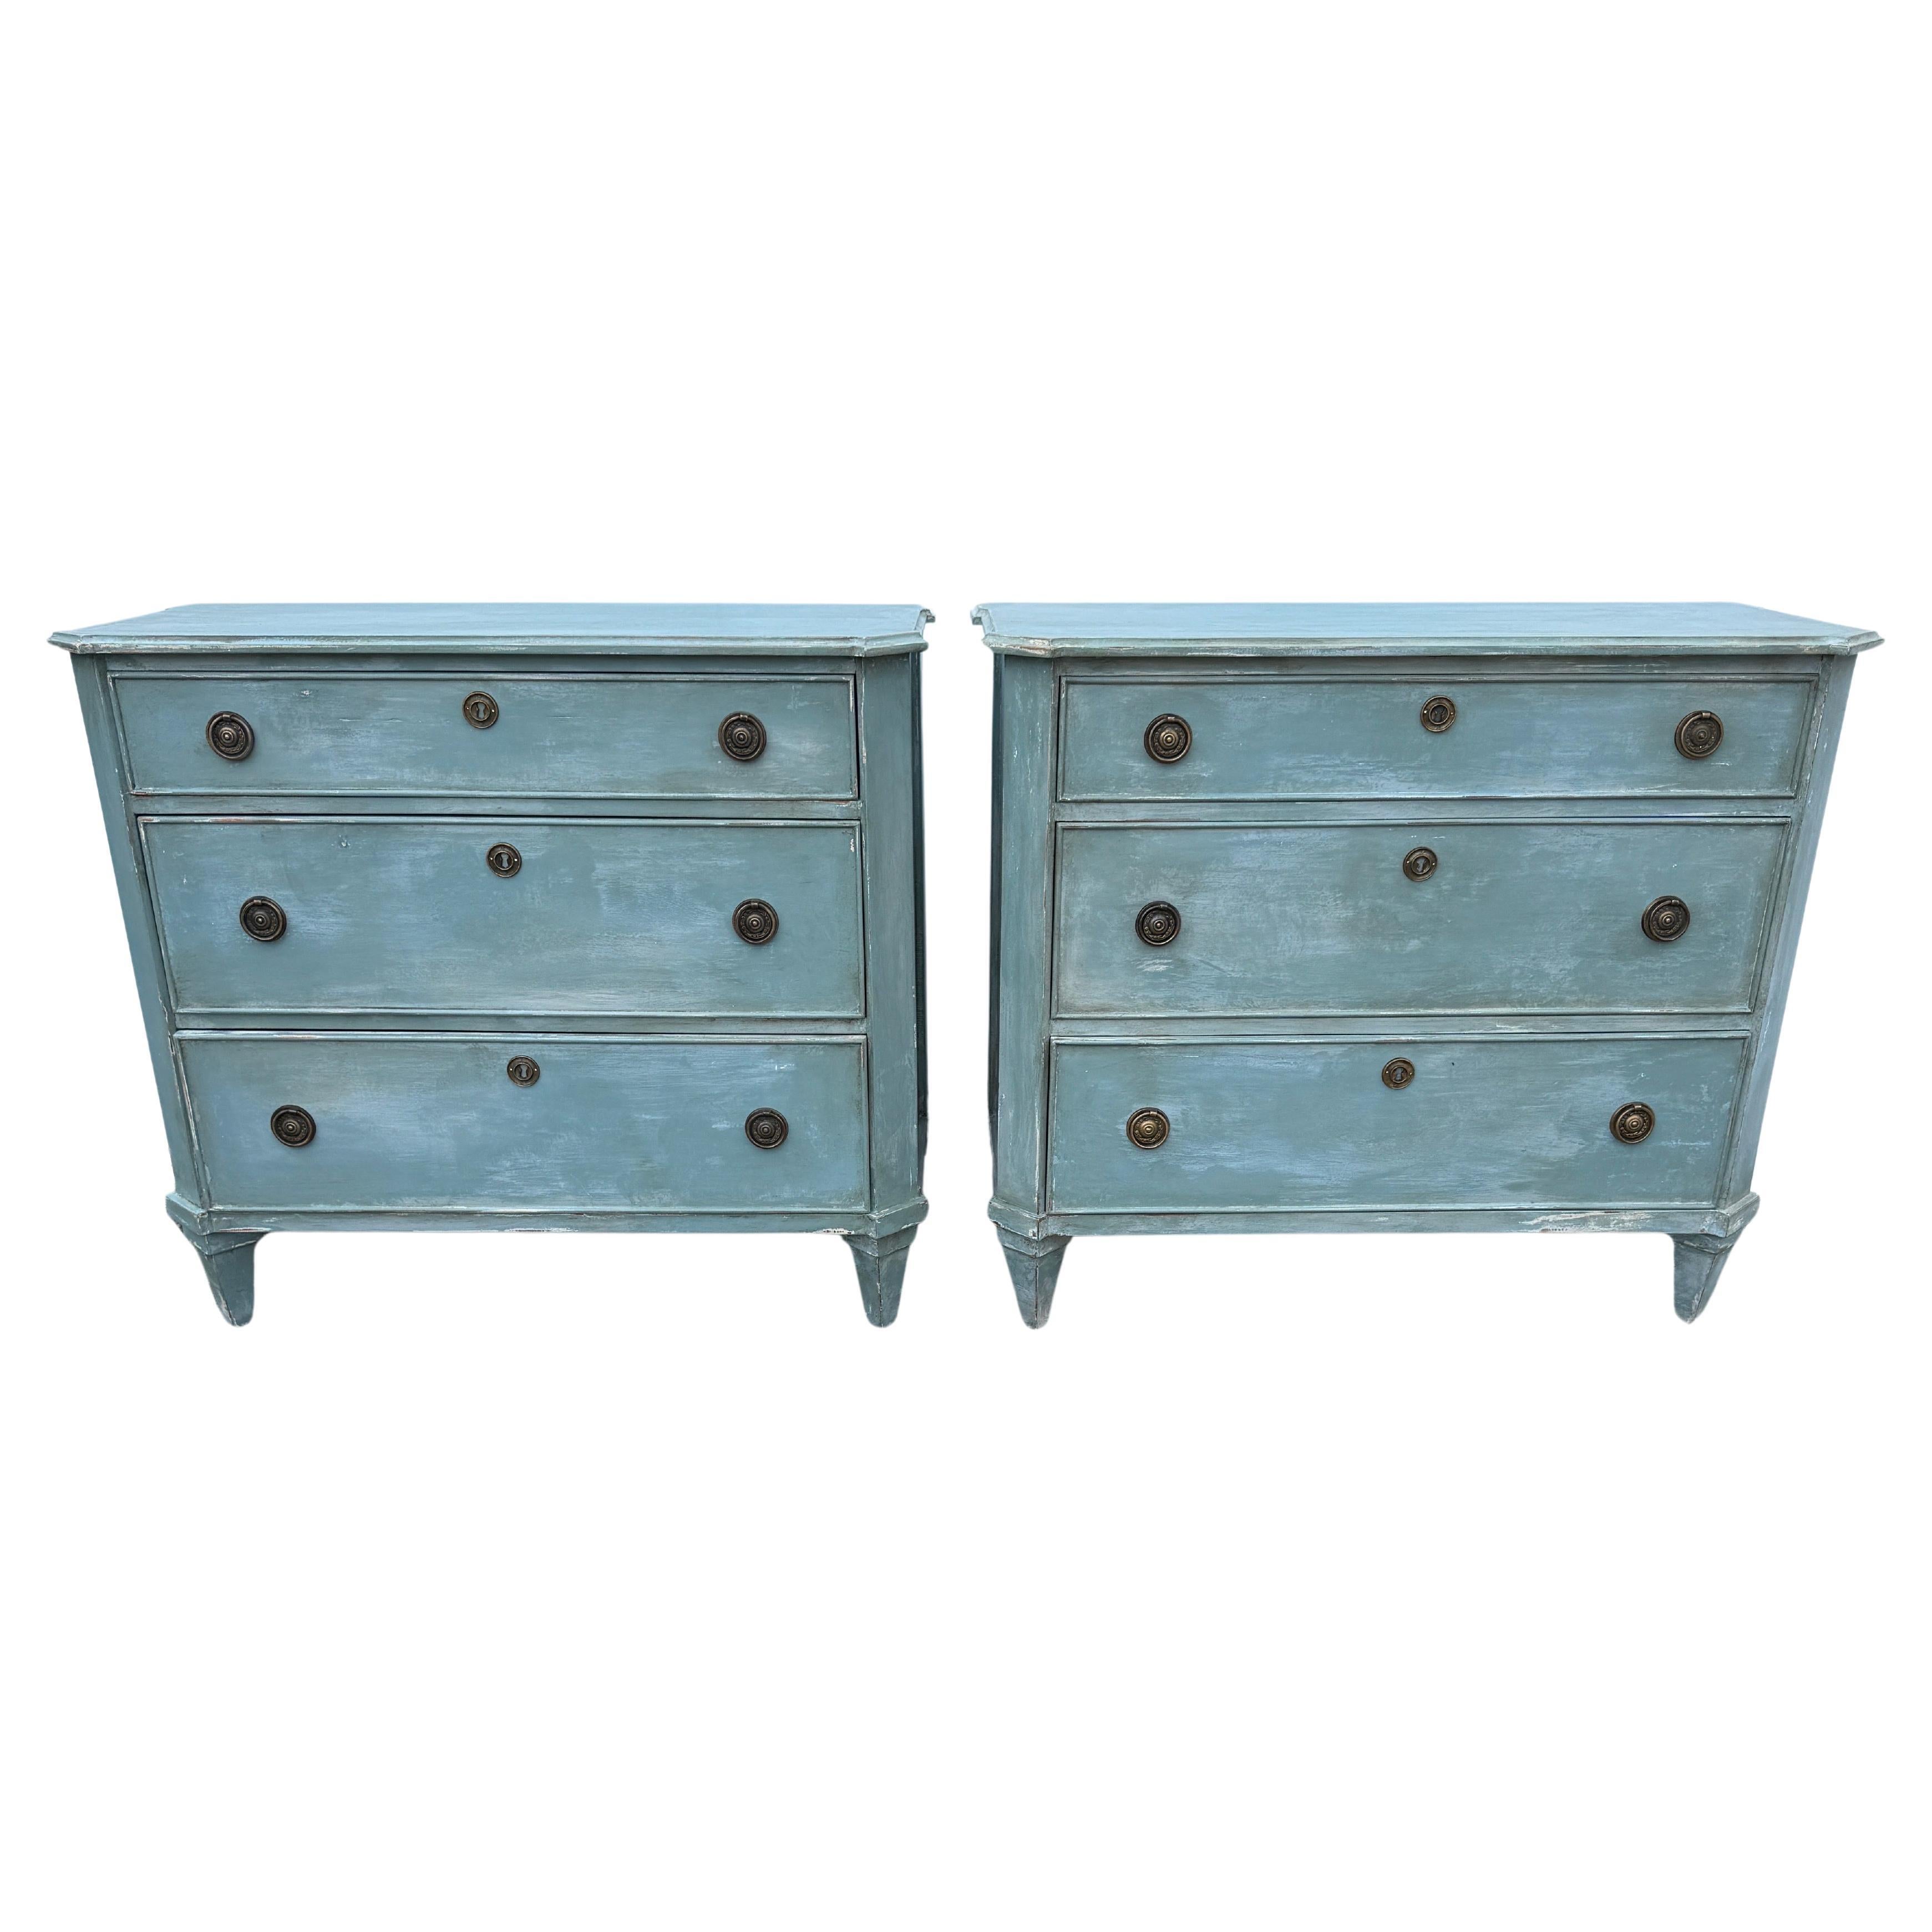 Bureau à 3 tiroirs de style suédois gustavien peint en bleu, une paire

Cette paire de bureaux à trois tiroirs s'inspire d'un coffre antique gustavien du XVIIIe siècle. Ils sont fabriqués et peints à la main, avec des pieds et un cadre en bois